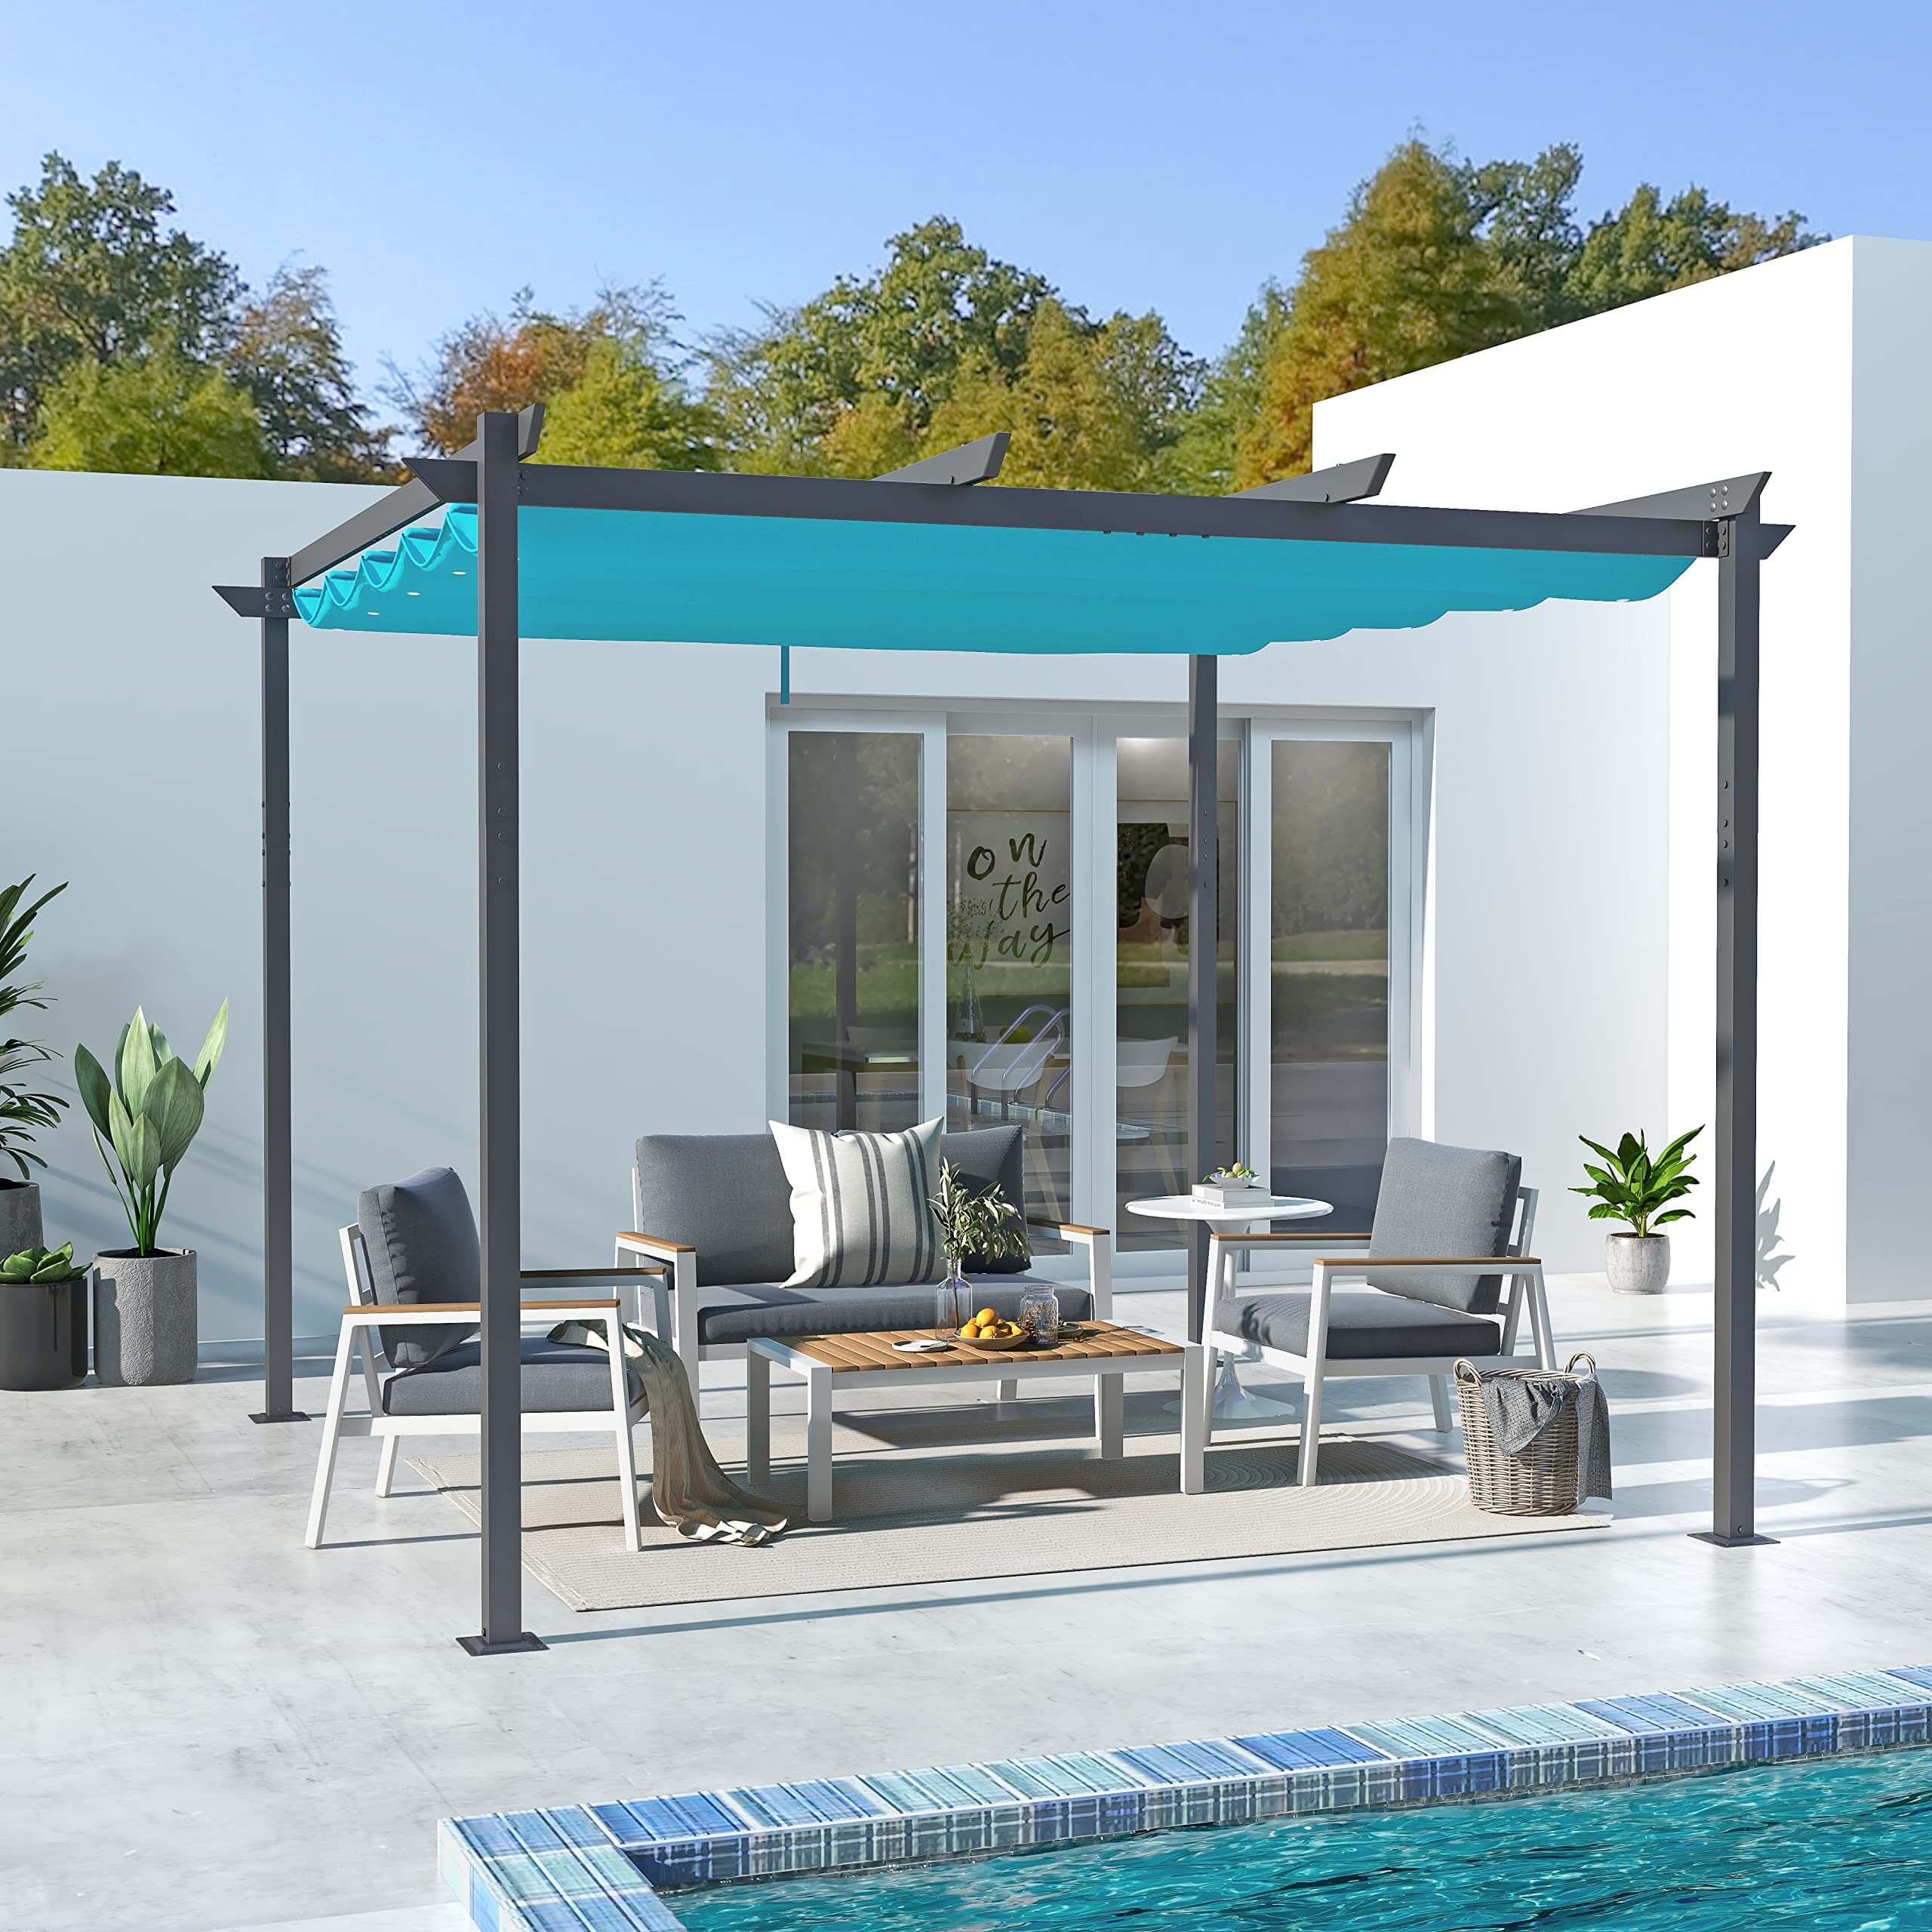 10' x 10' Aluminum Outdoor Pergola with Retractable Canopy for Patio, Backyard, Garden